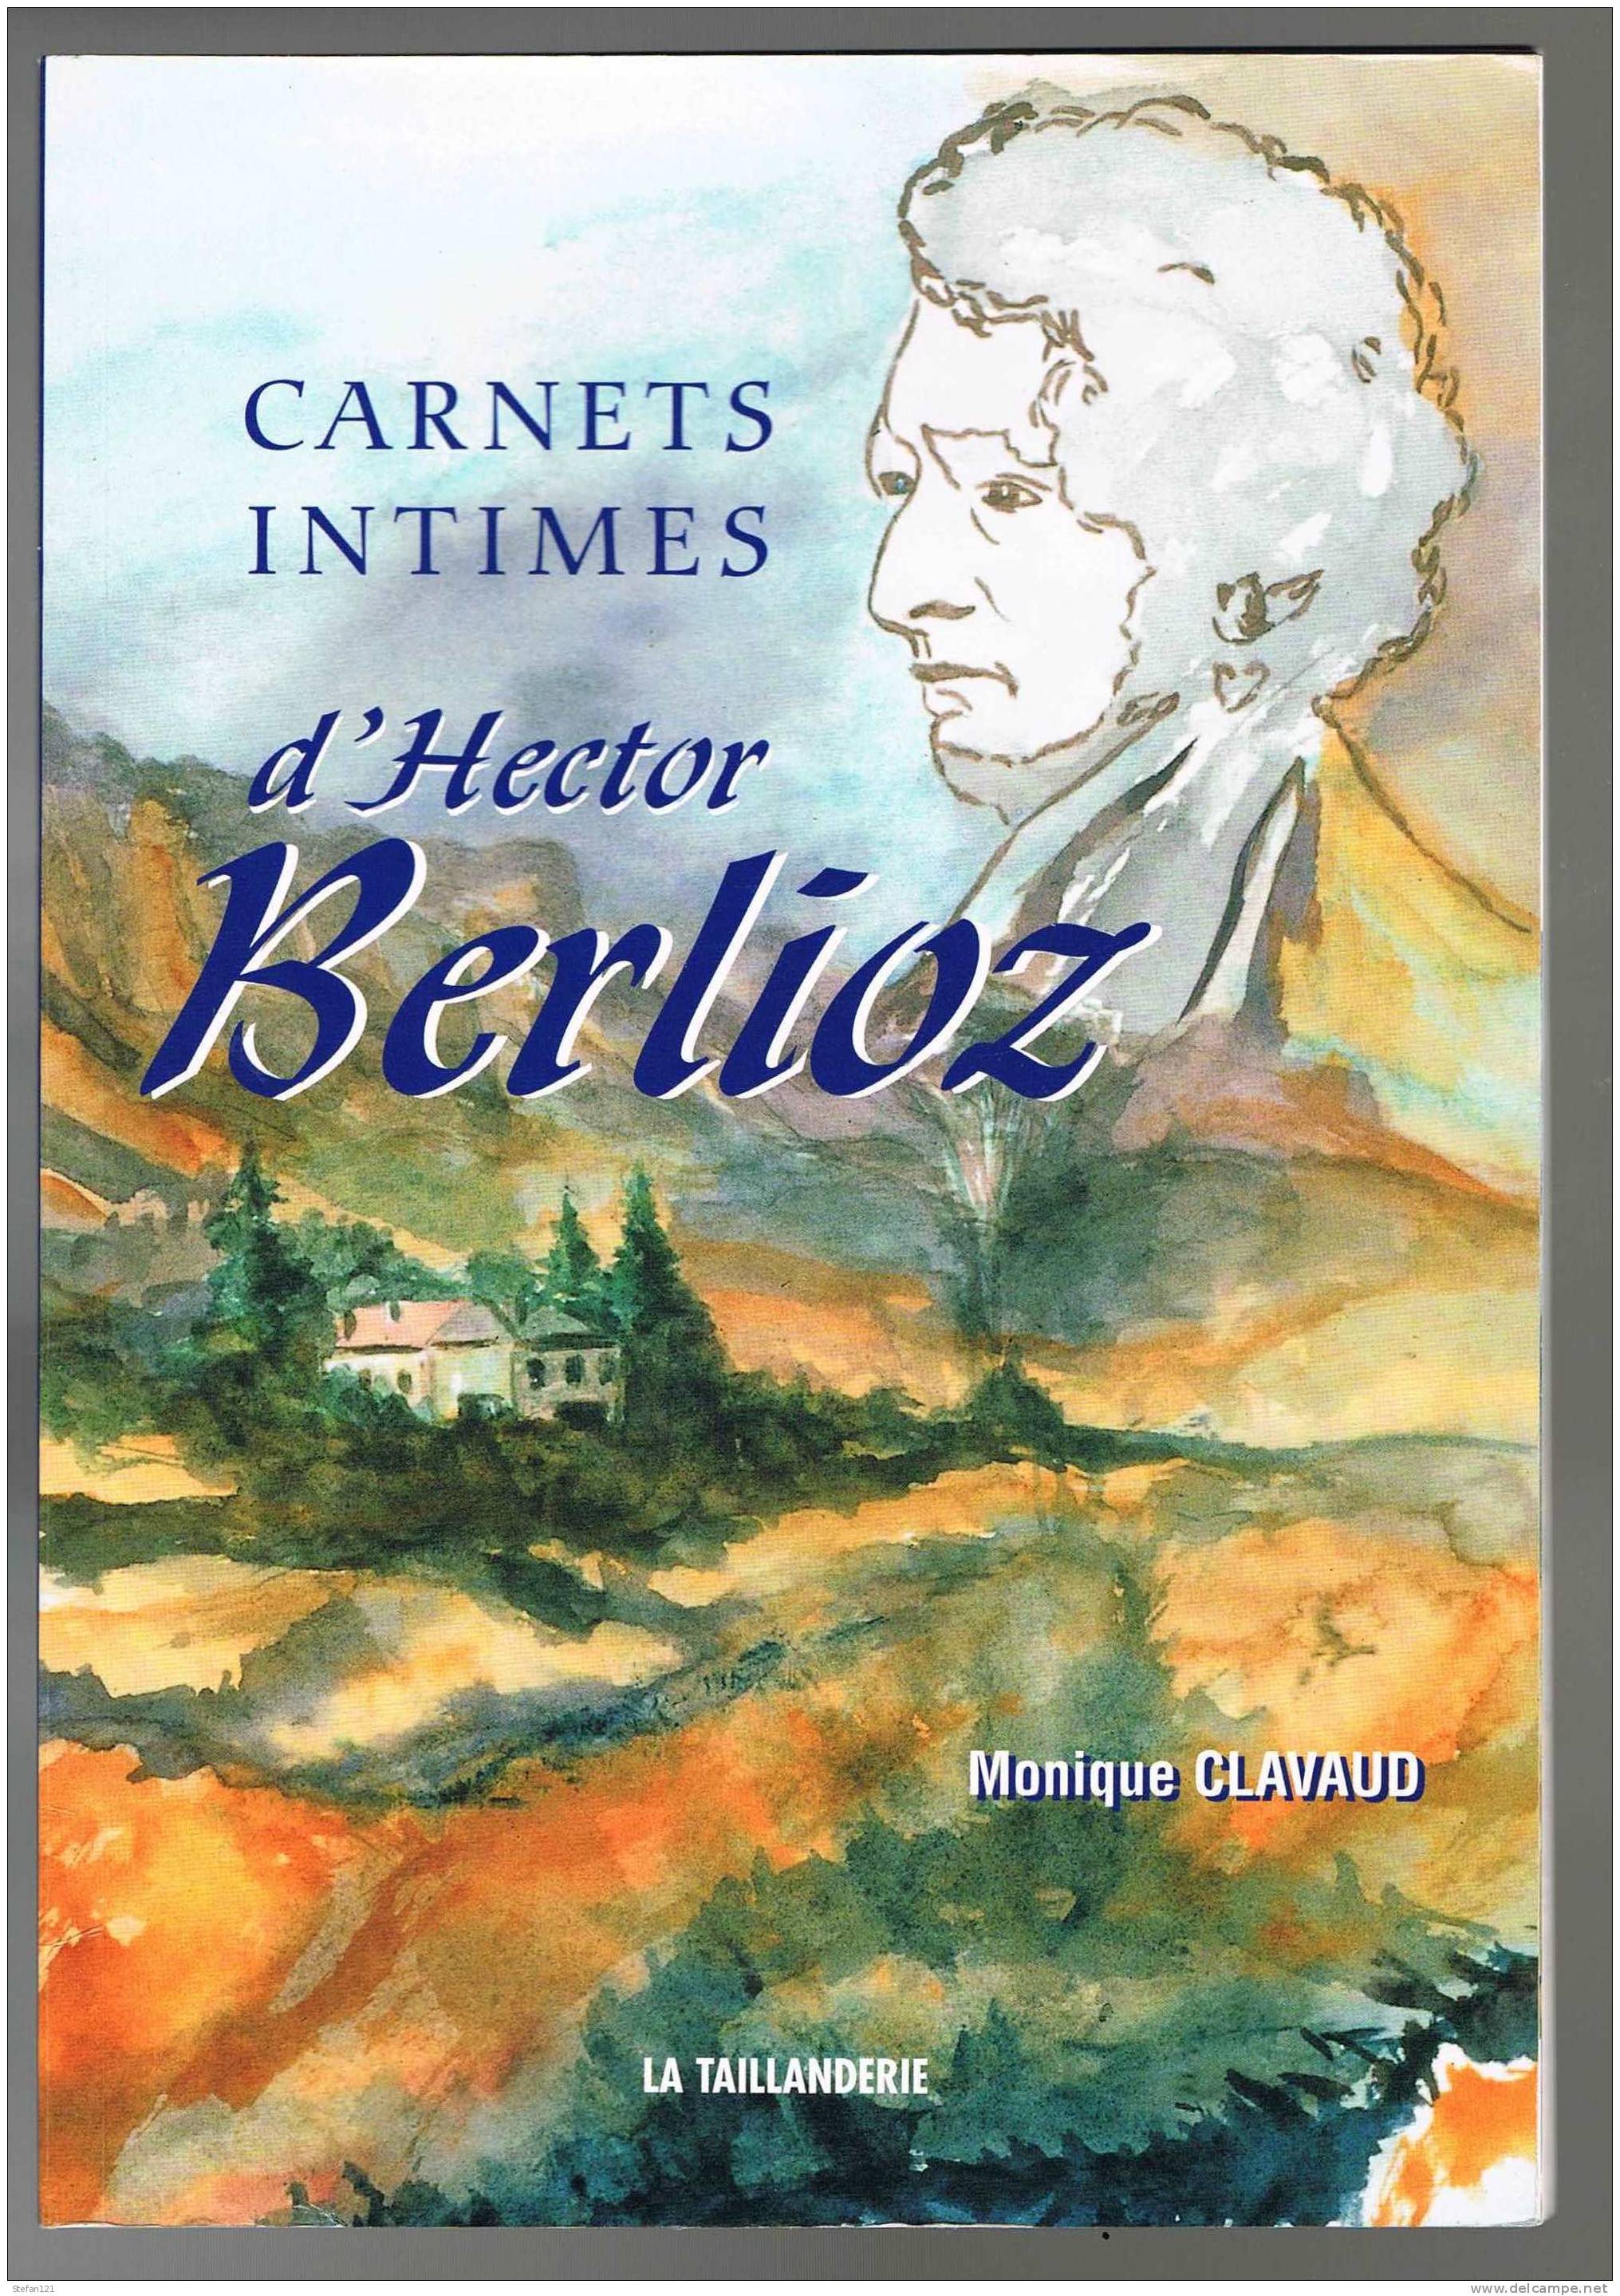 Carnets Intimes D'Hector Berlioz - Monique Clavaud - 2003 -  La Taillanderie - 64 Pages - 23,2 Cm X 16,2 Cm - Música